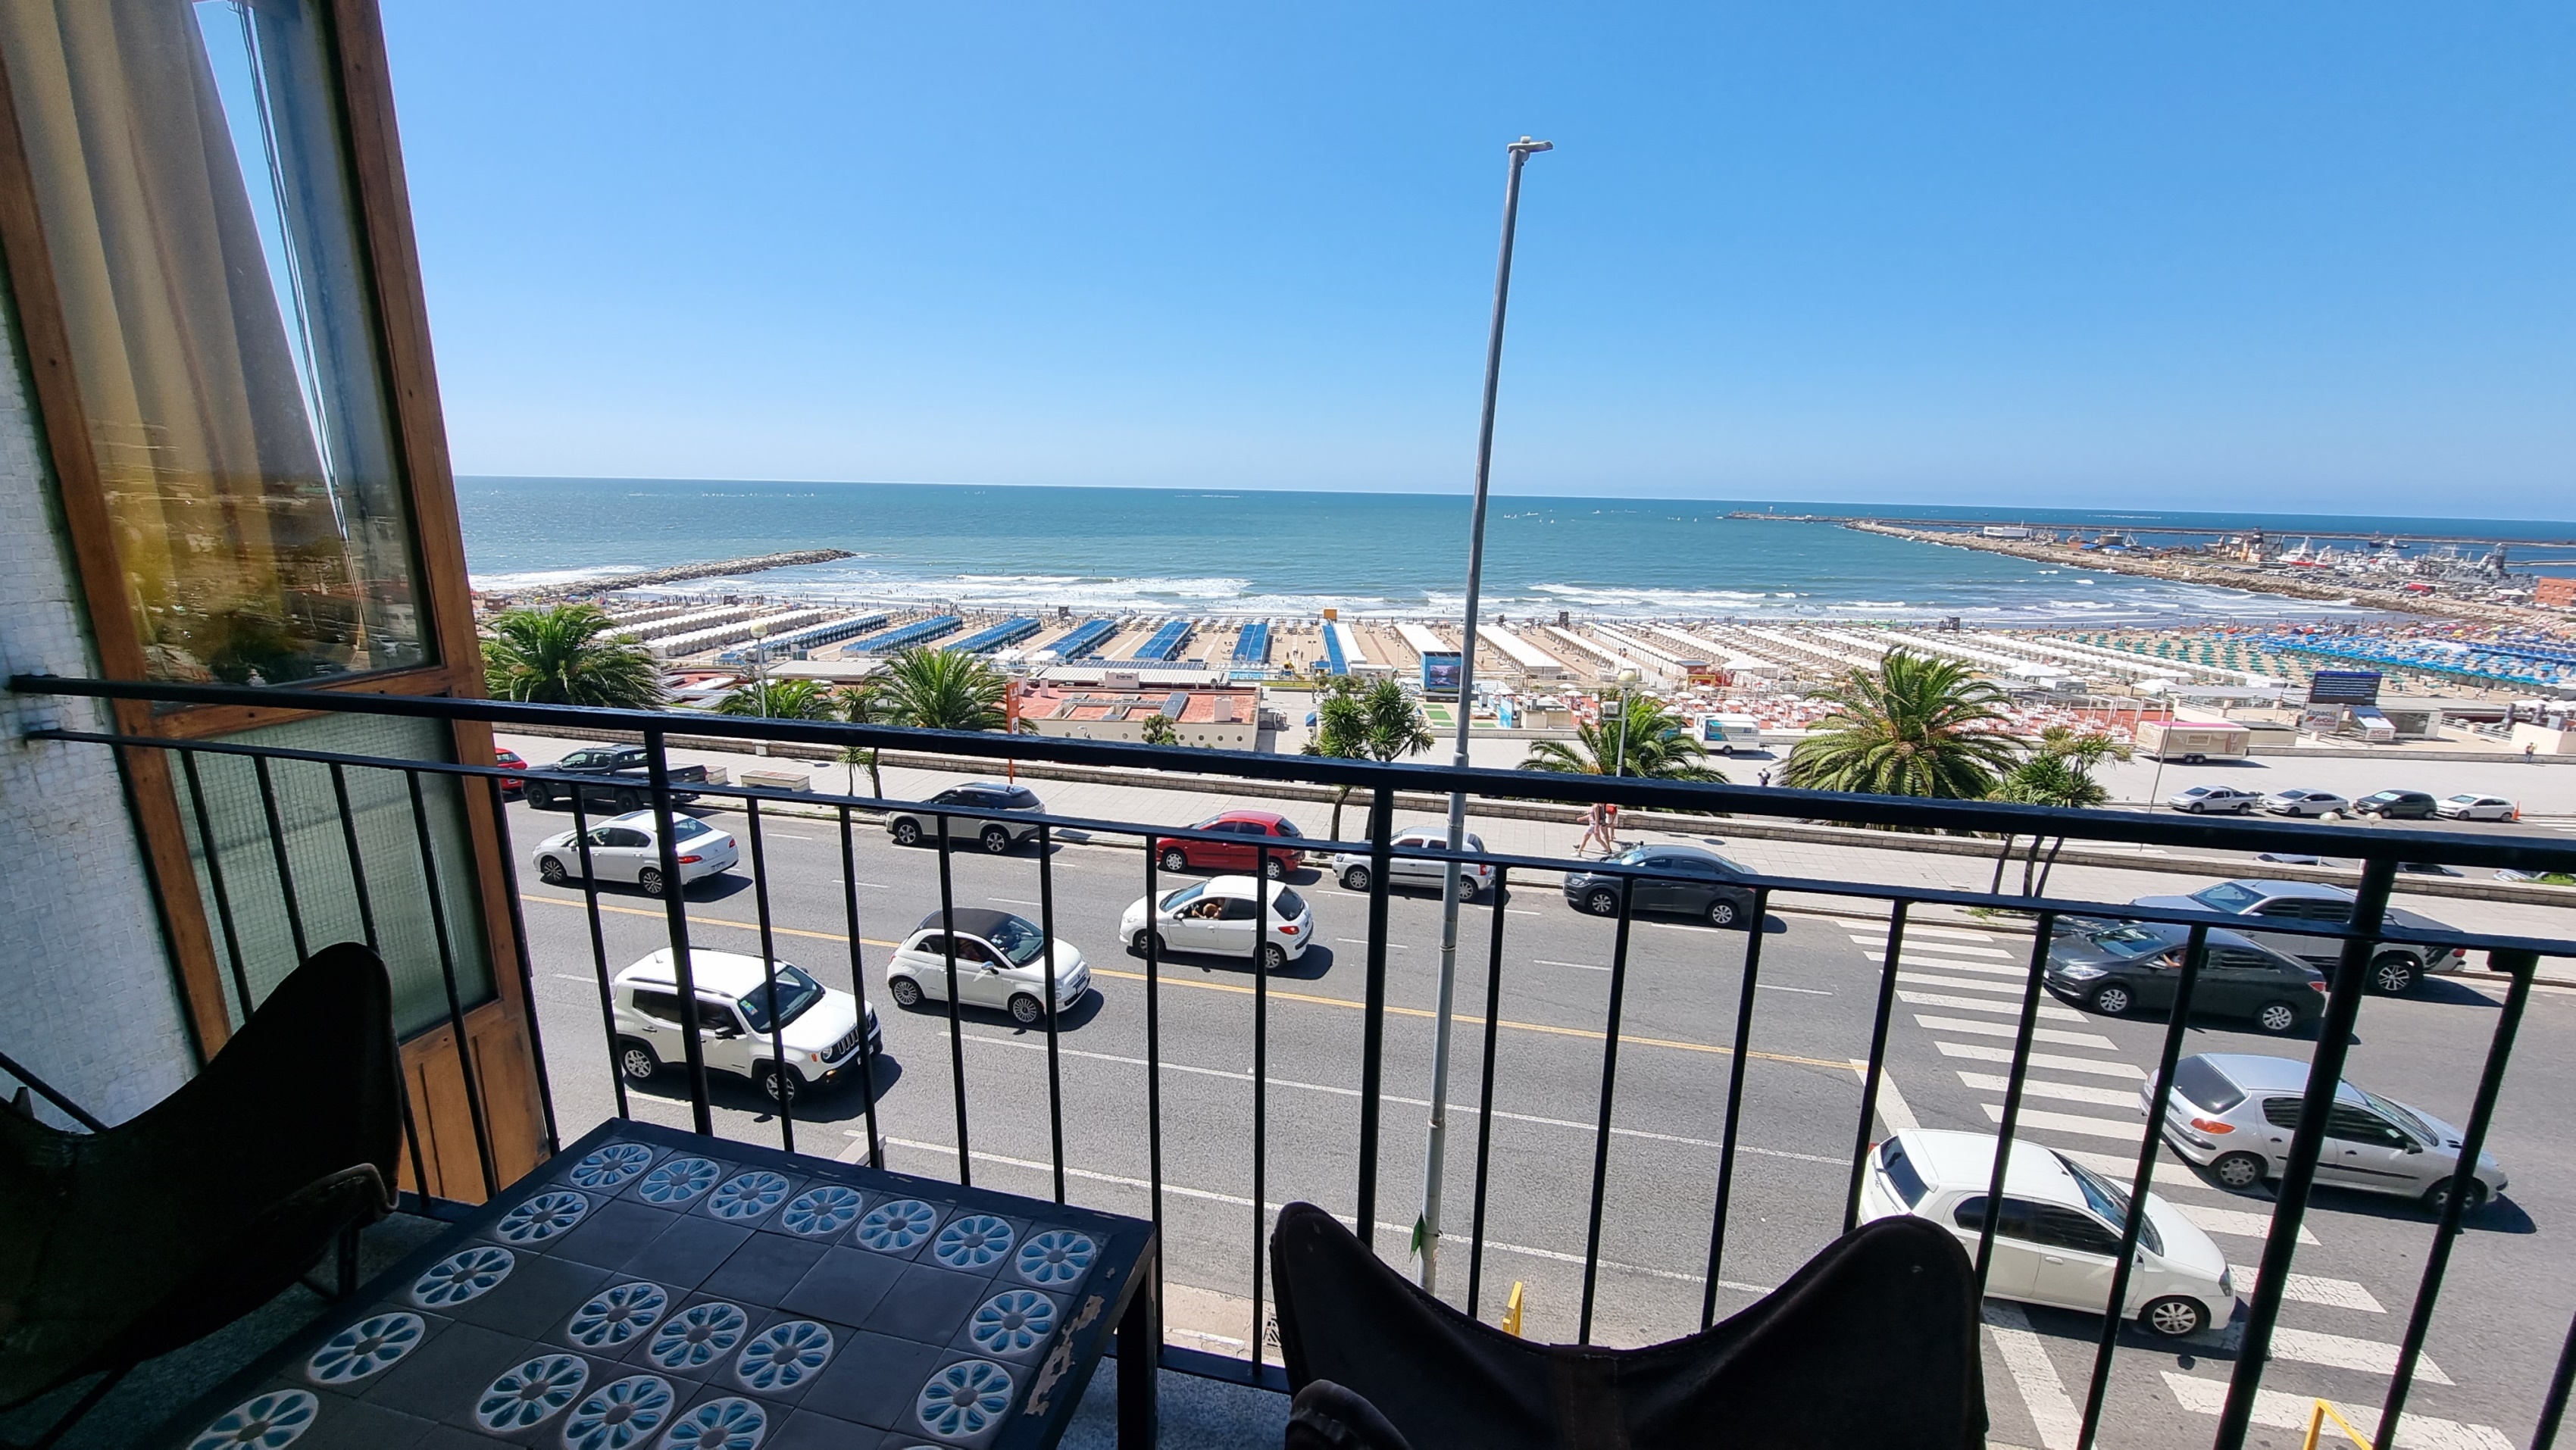 Semipiso 4 ambientes con dependencia frente al mar. Balcon, cochera y baulera. Zona Playa Grande